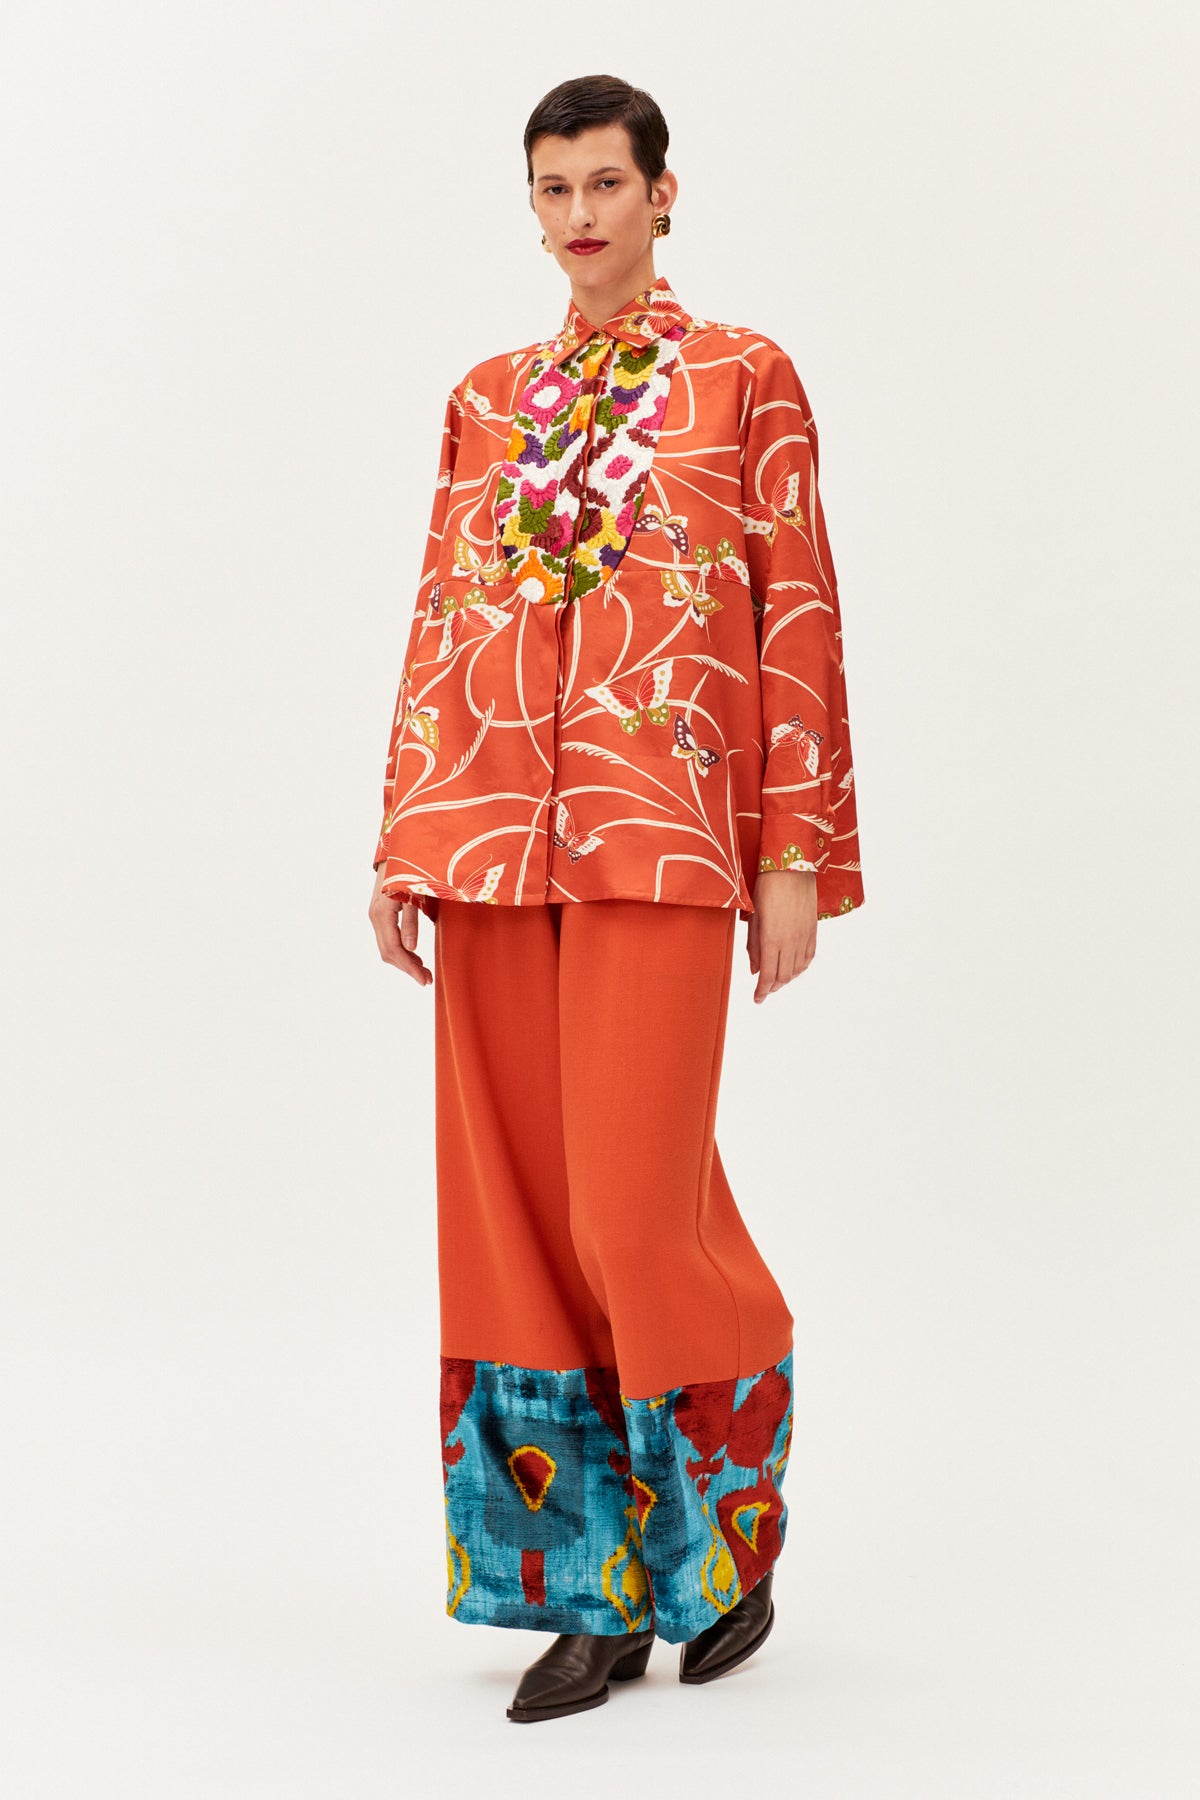 One-of-a-kind Vintage Kimono Plastron Blouse